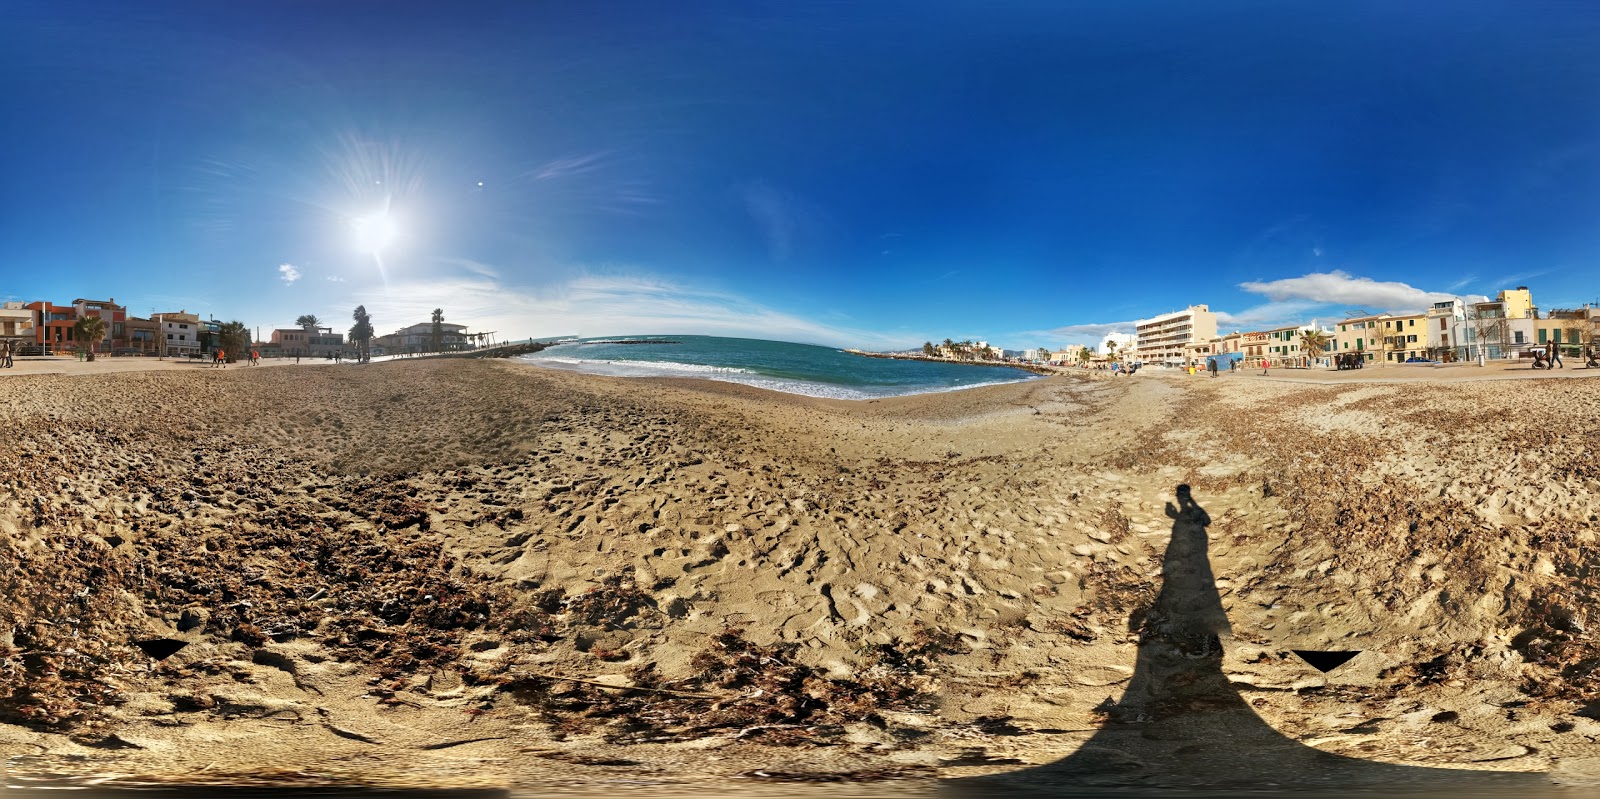 El Molinar beach'in fotoğrafı çok temiz temizlik seviyesi ile